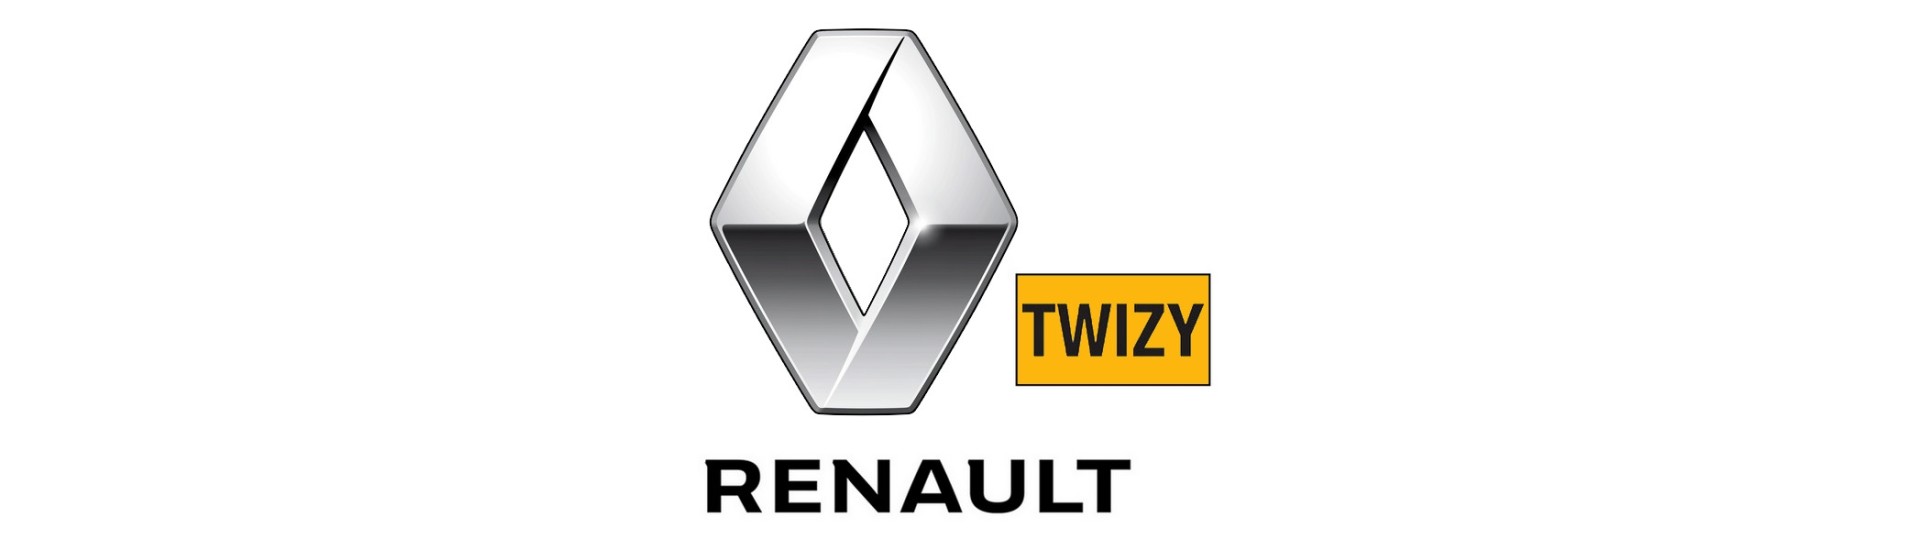 Produttore elettrico al miglior prezzo senza un permesso Renault Twizy